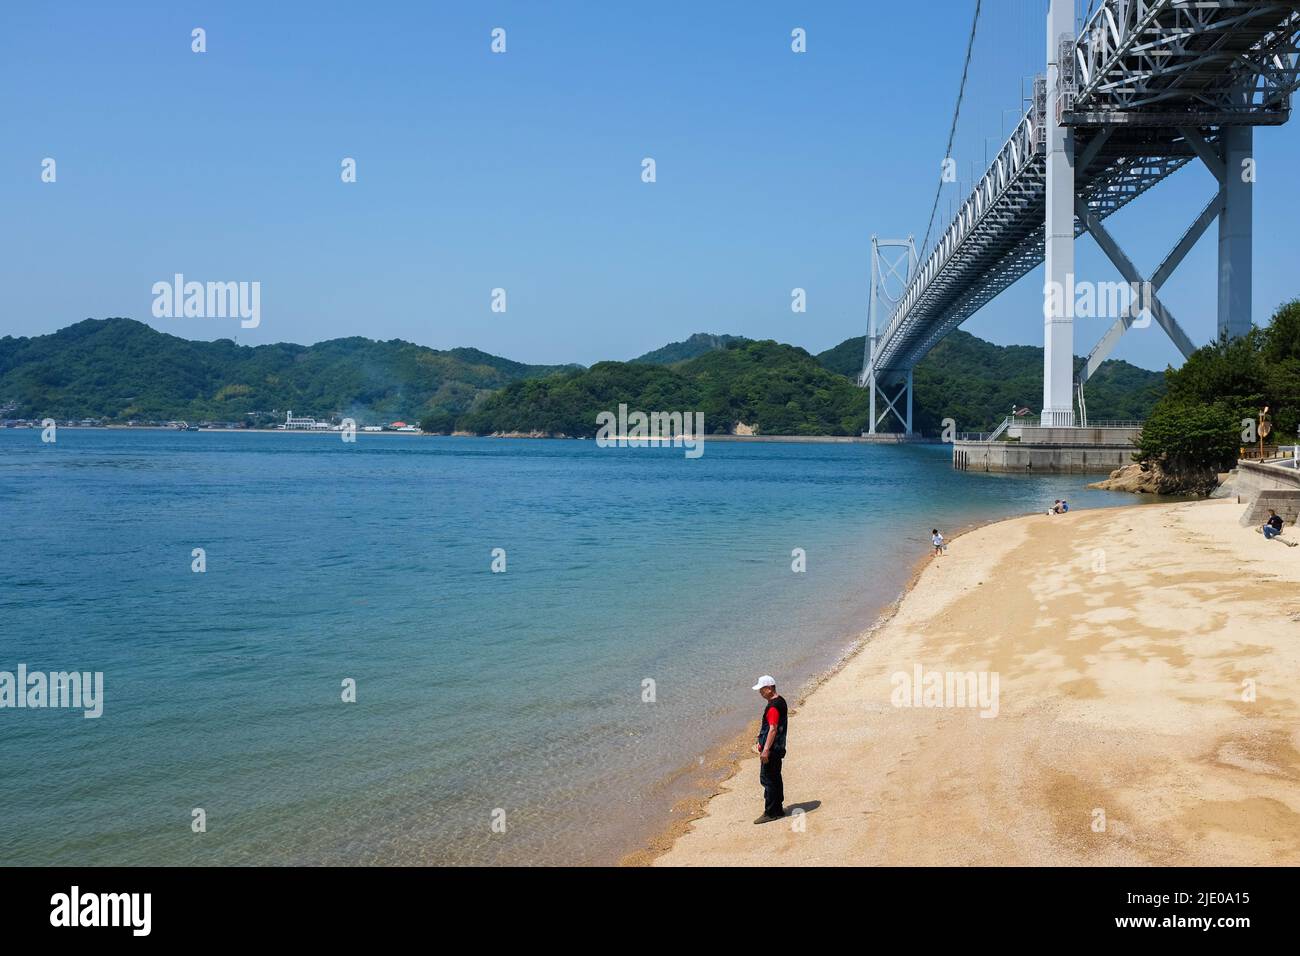 Innoshima-Brücke zwischen der Insel Mukai (Mukaishima) und der Insel Inno (Innoshima) im japanischen Binnenmeer. Stockfoto